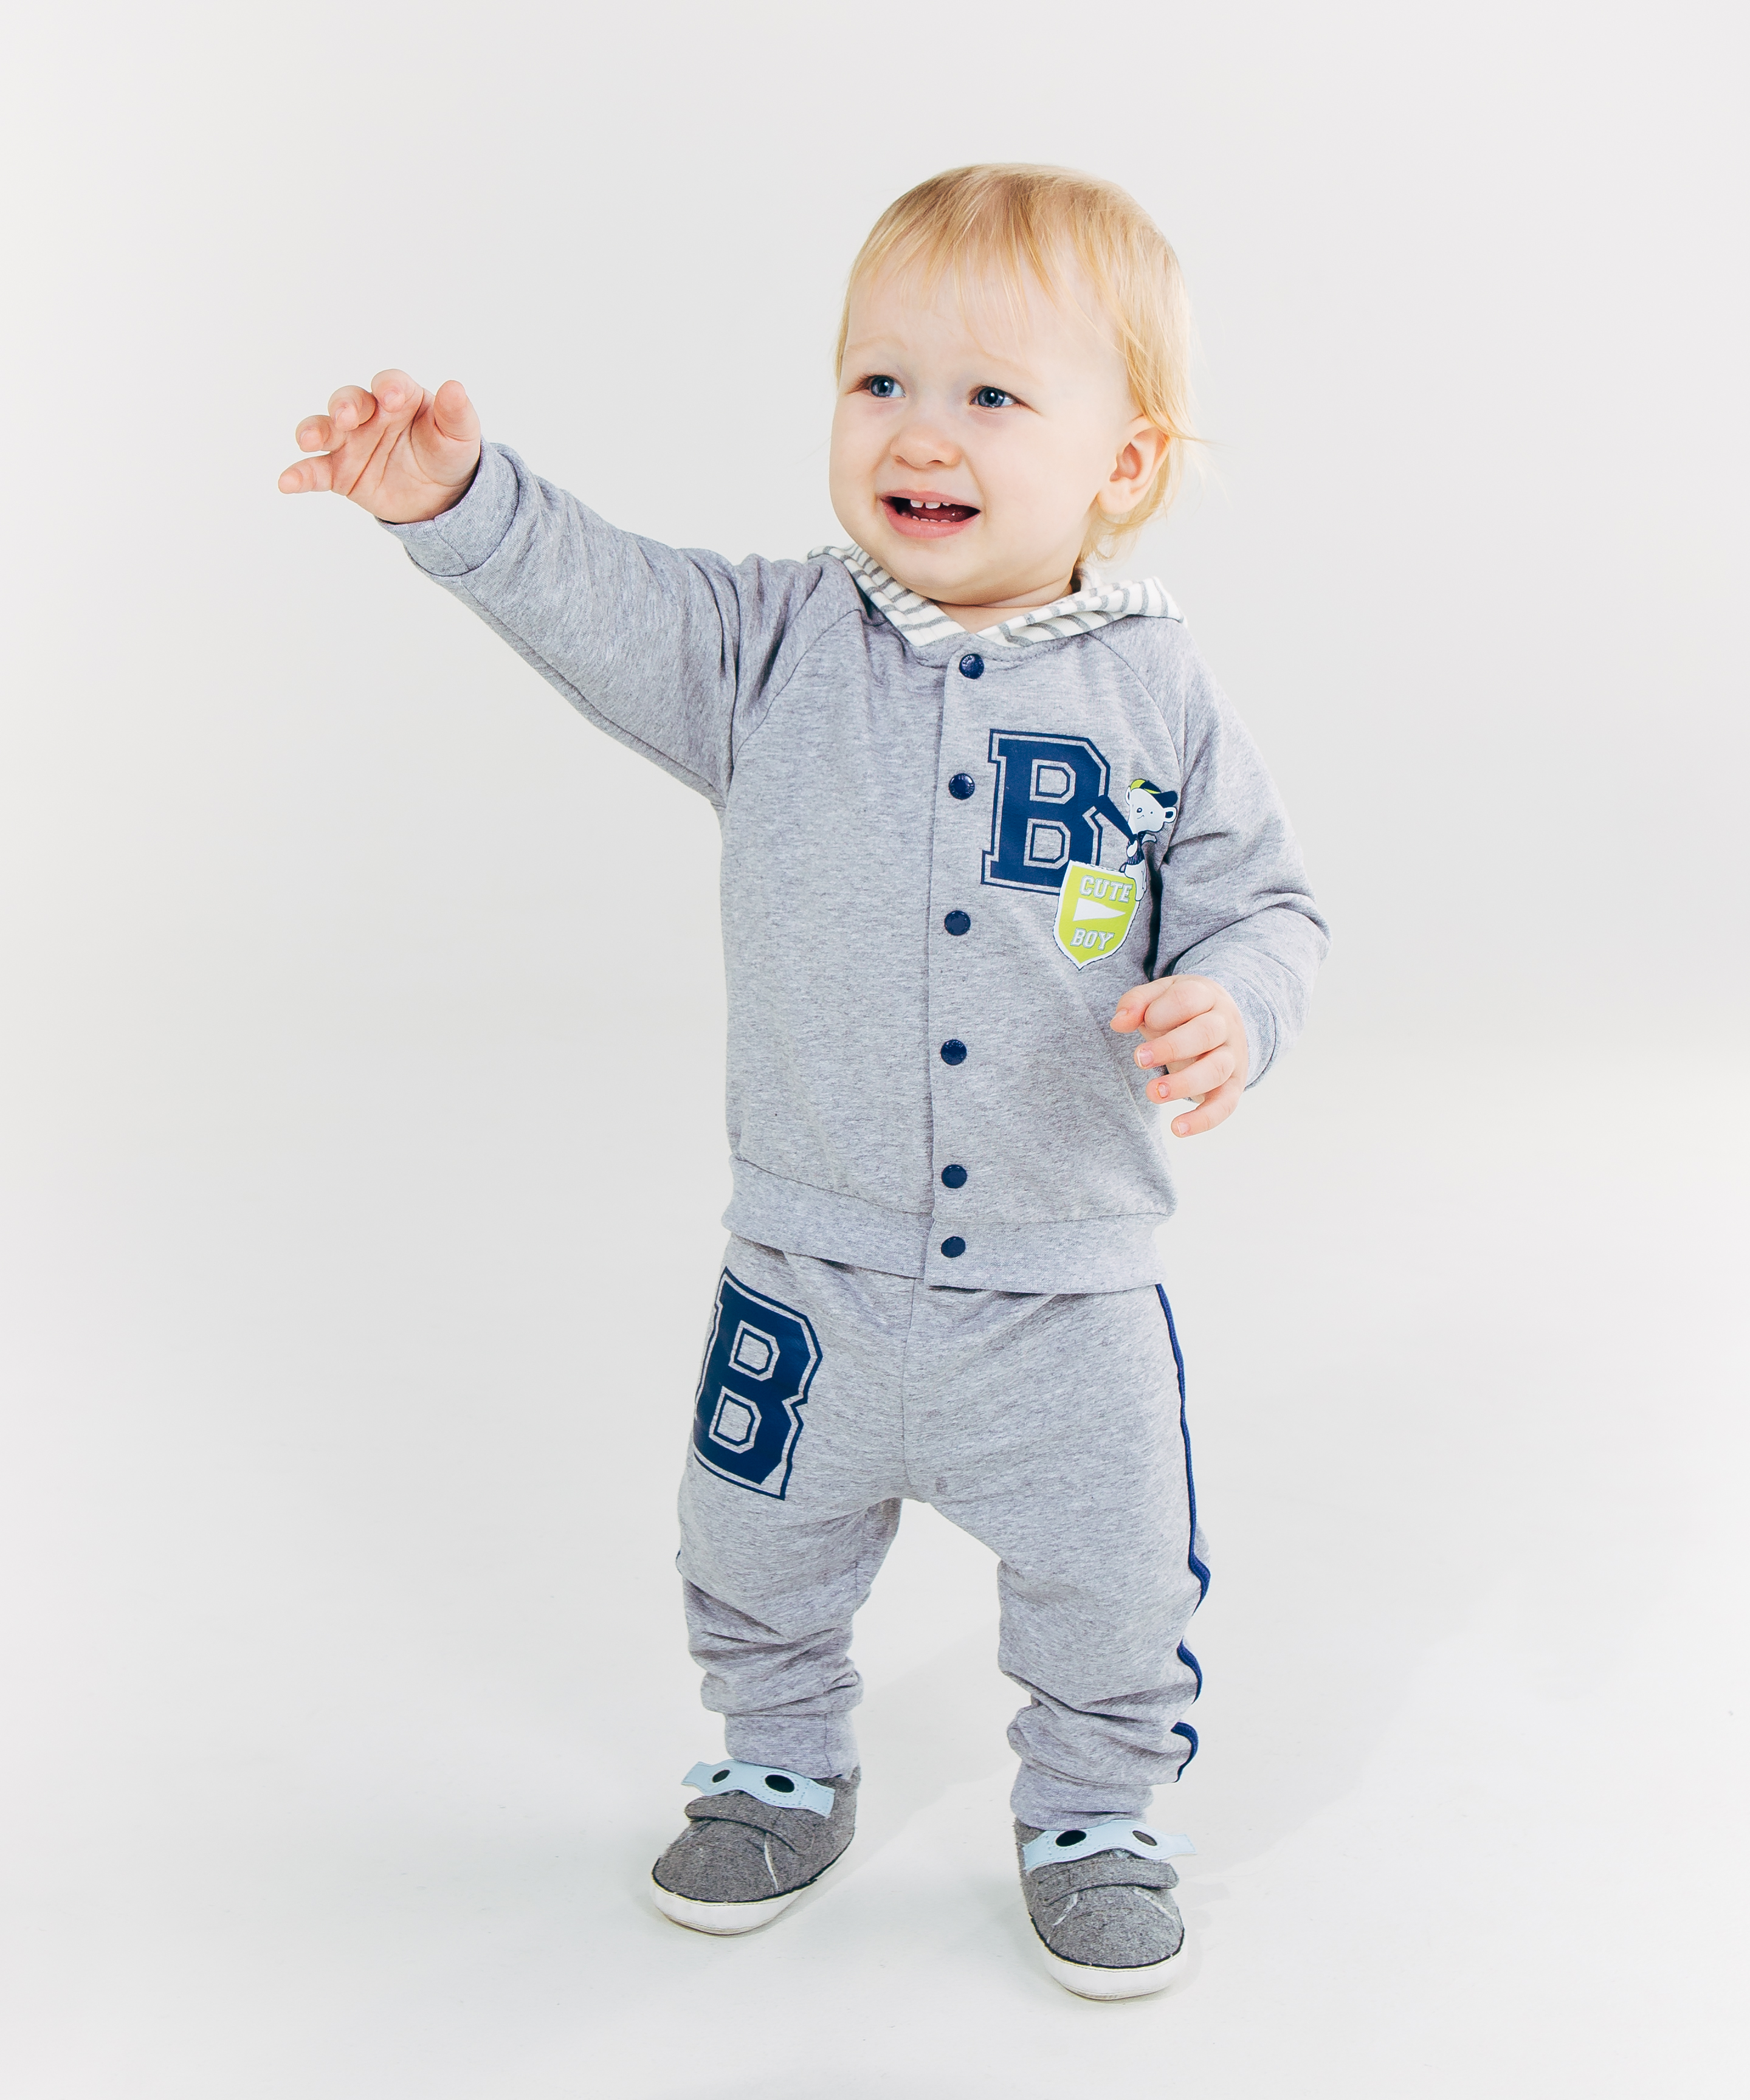 Комплект (куртка+брюки) для мальчика, арт. 117193, возраст от 6 до 18 месяцев